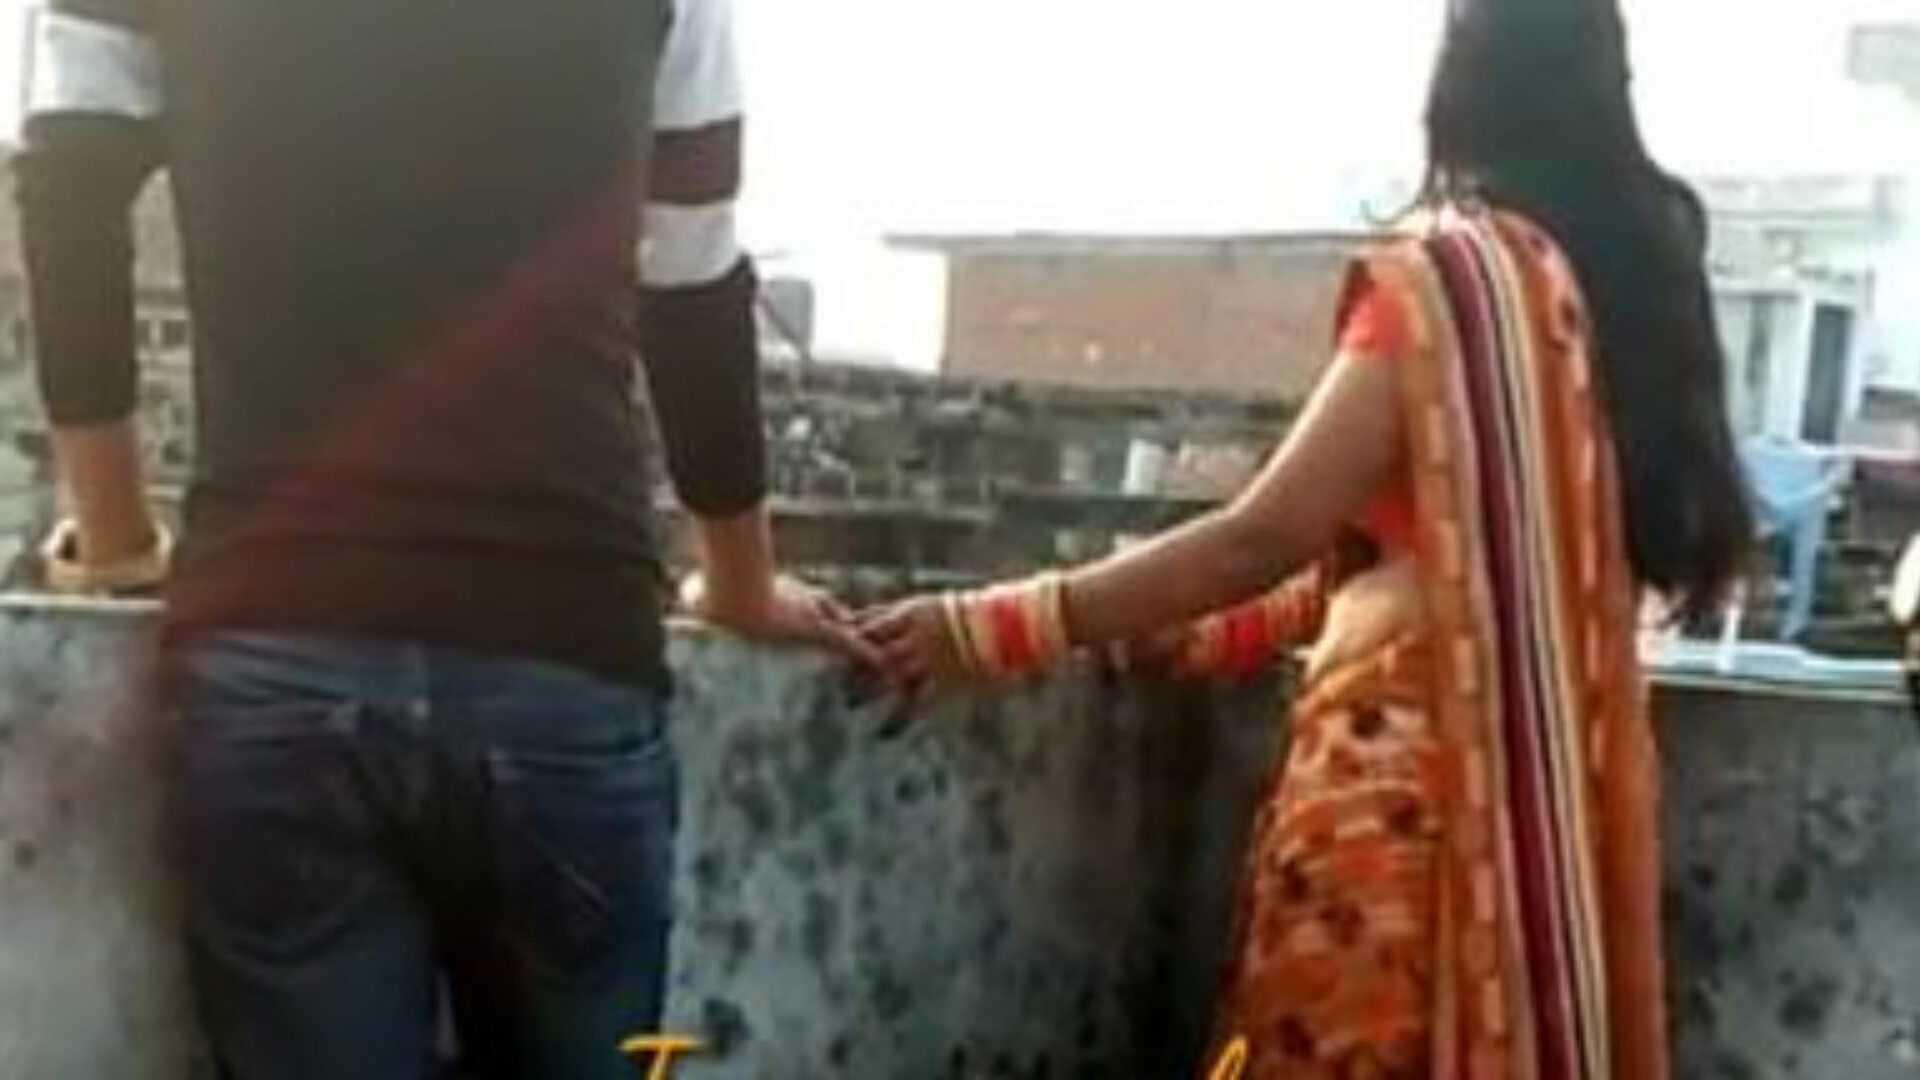 Ινδικό σπιτικό βίντεο γαμημένο σύζυγος φίλου: δωρεάν πορνό fd παρακολουθήστε ινδικό σπιτικό βίντεο γαμημένο φίλο σύζυγος ταινία στο xhamster - η απόλυτη βάση δεδομένων της δωρεάν-για-όλα hardcore και σπιτική γυναίκα γαμήσεις πορνό πορνό πορνό